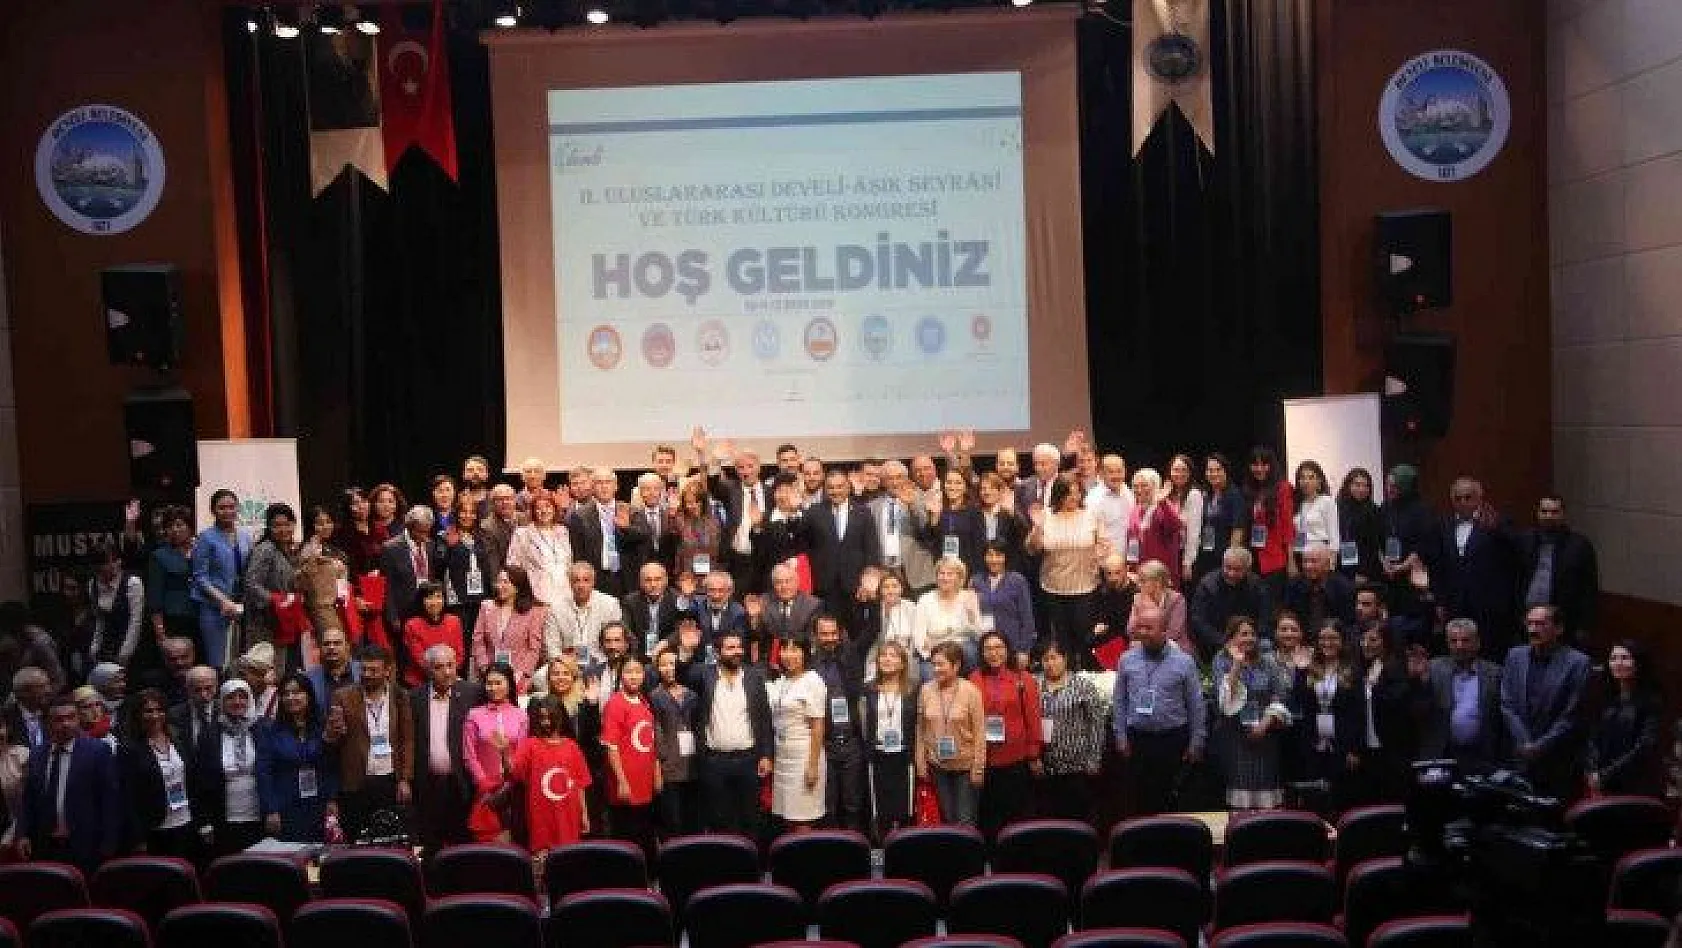 3.Uluslararası Develi-Âşık Seyrani ve Türk Kültürü Kongresi hazırlıkları başladı